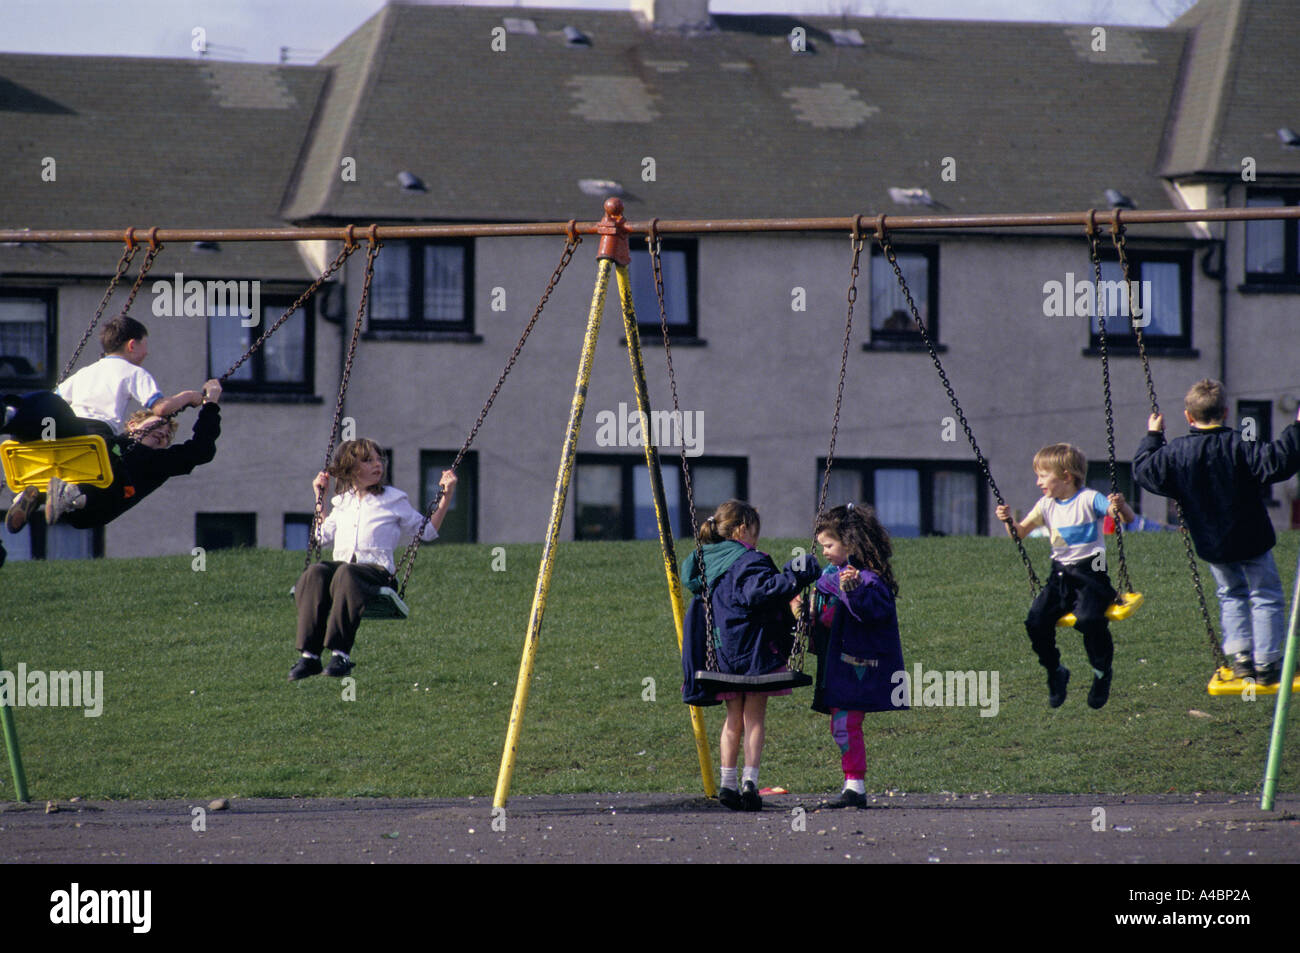 Motherwell, Escocia, marzo de 1992. Los niños juegan en los columpios. Ravenscraig acería cerrada en 1992 causando un desempleo masivo en la zona. Foto de stock